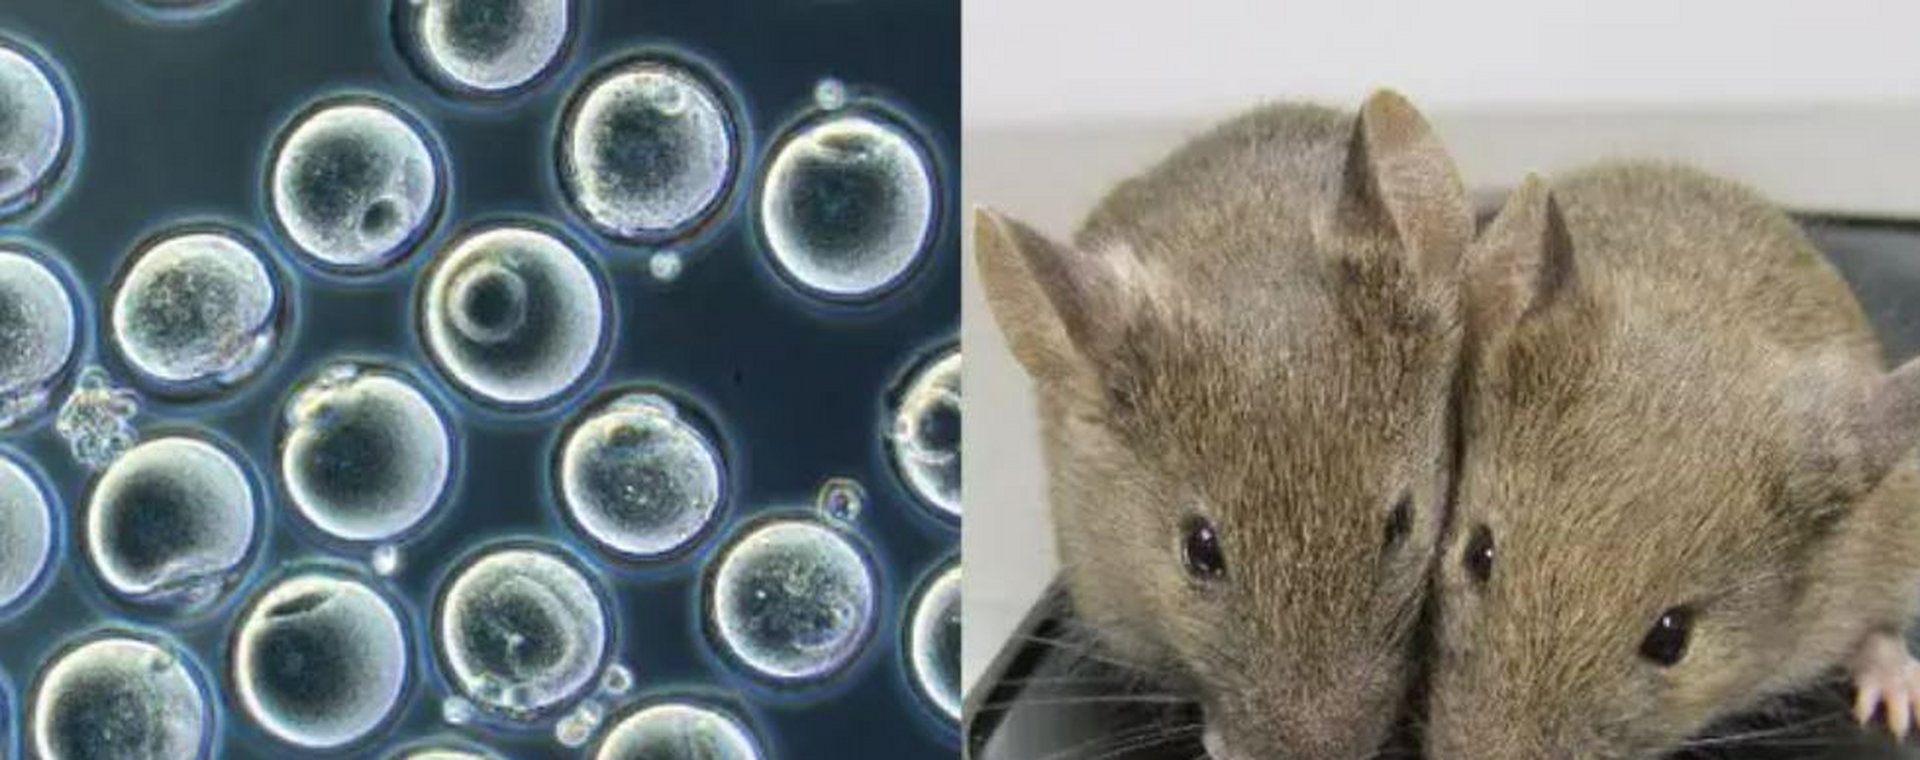  Naukowcy z Japonii mówią, że stworzyli mysz z dwóch biologicznych ojców.